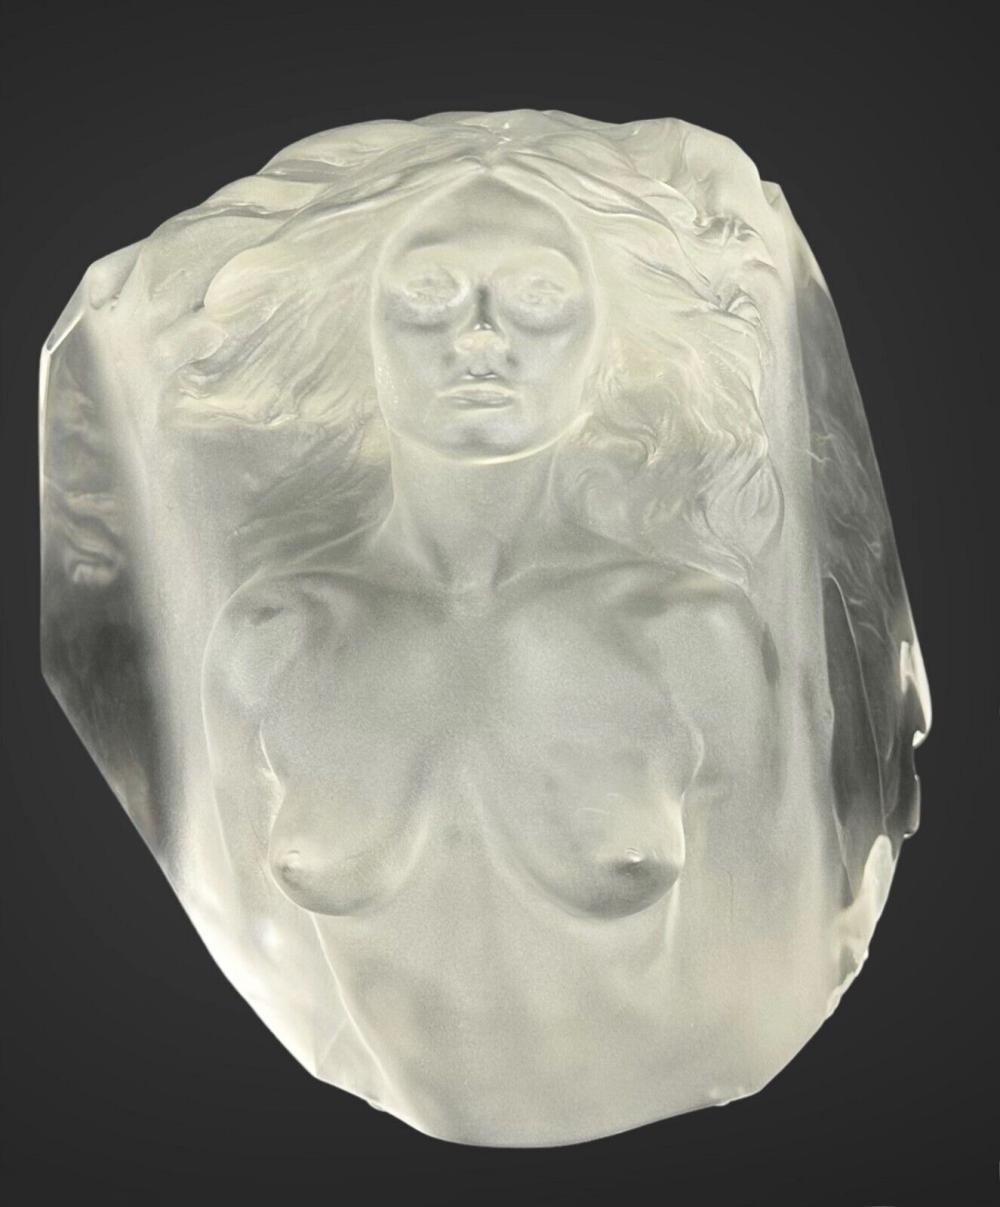 FREDERICK HART 'MEMOIR' ACRYLIC SCULPTURE - Sculpture by Frederick Hart